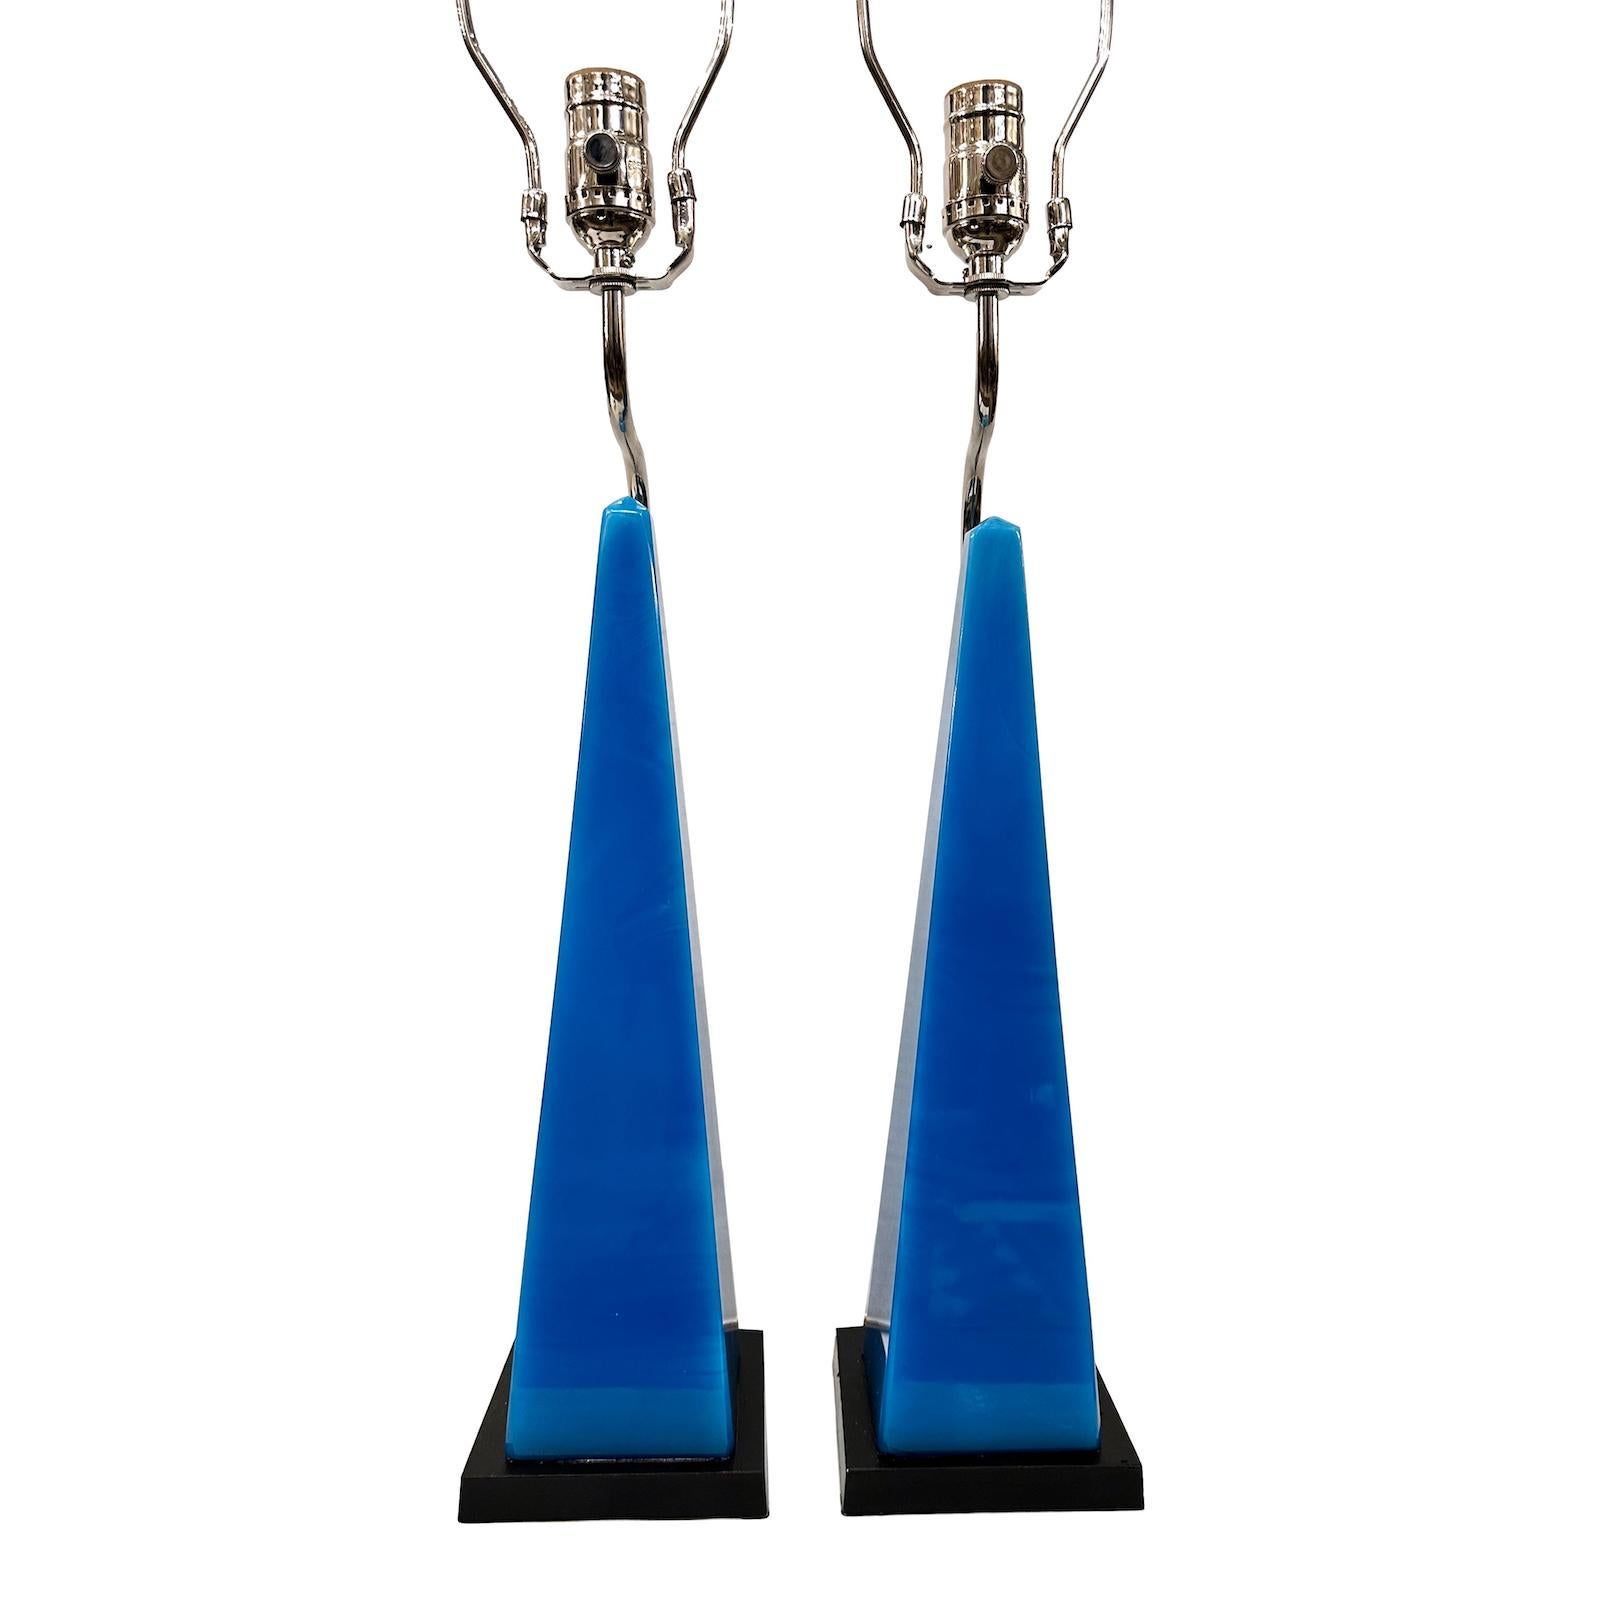 Paire d'obélisques en verre bleu français des années 1950, montés comme lampes.

Mesures :
Hauteur du corps : 18″
Hauteur jusqu'au repose-ombre : 30″
Base : 5″ x 5″